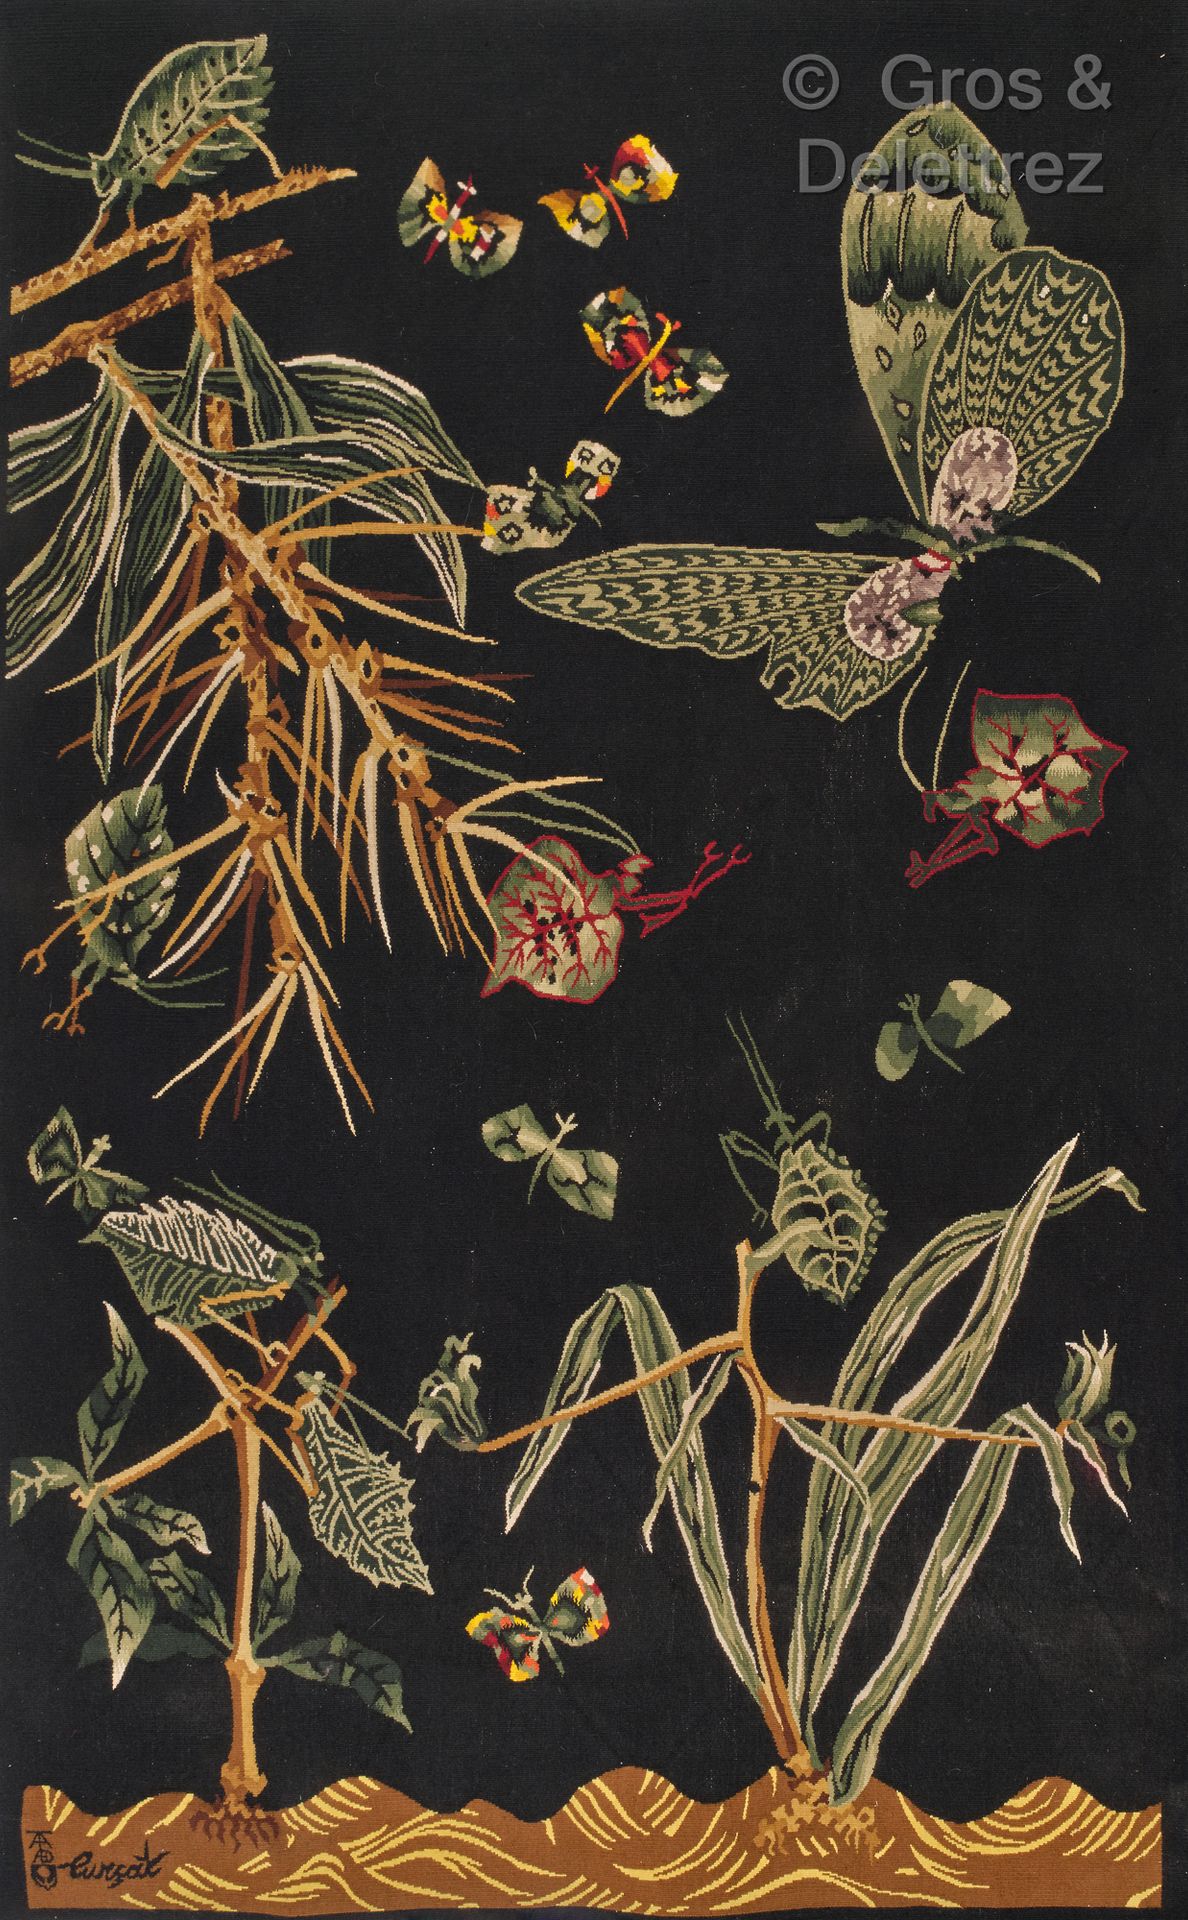 Jean LURÇAT (1892-1966) "Grüne Flügel"

Wandteppich aus Wolle.

Signiert.

Verla&hellip;